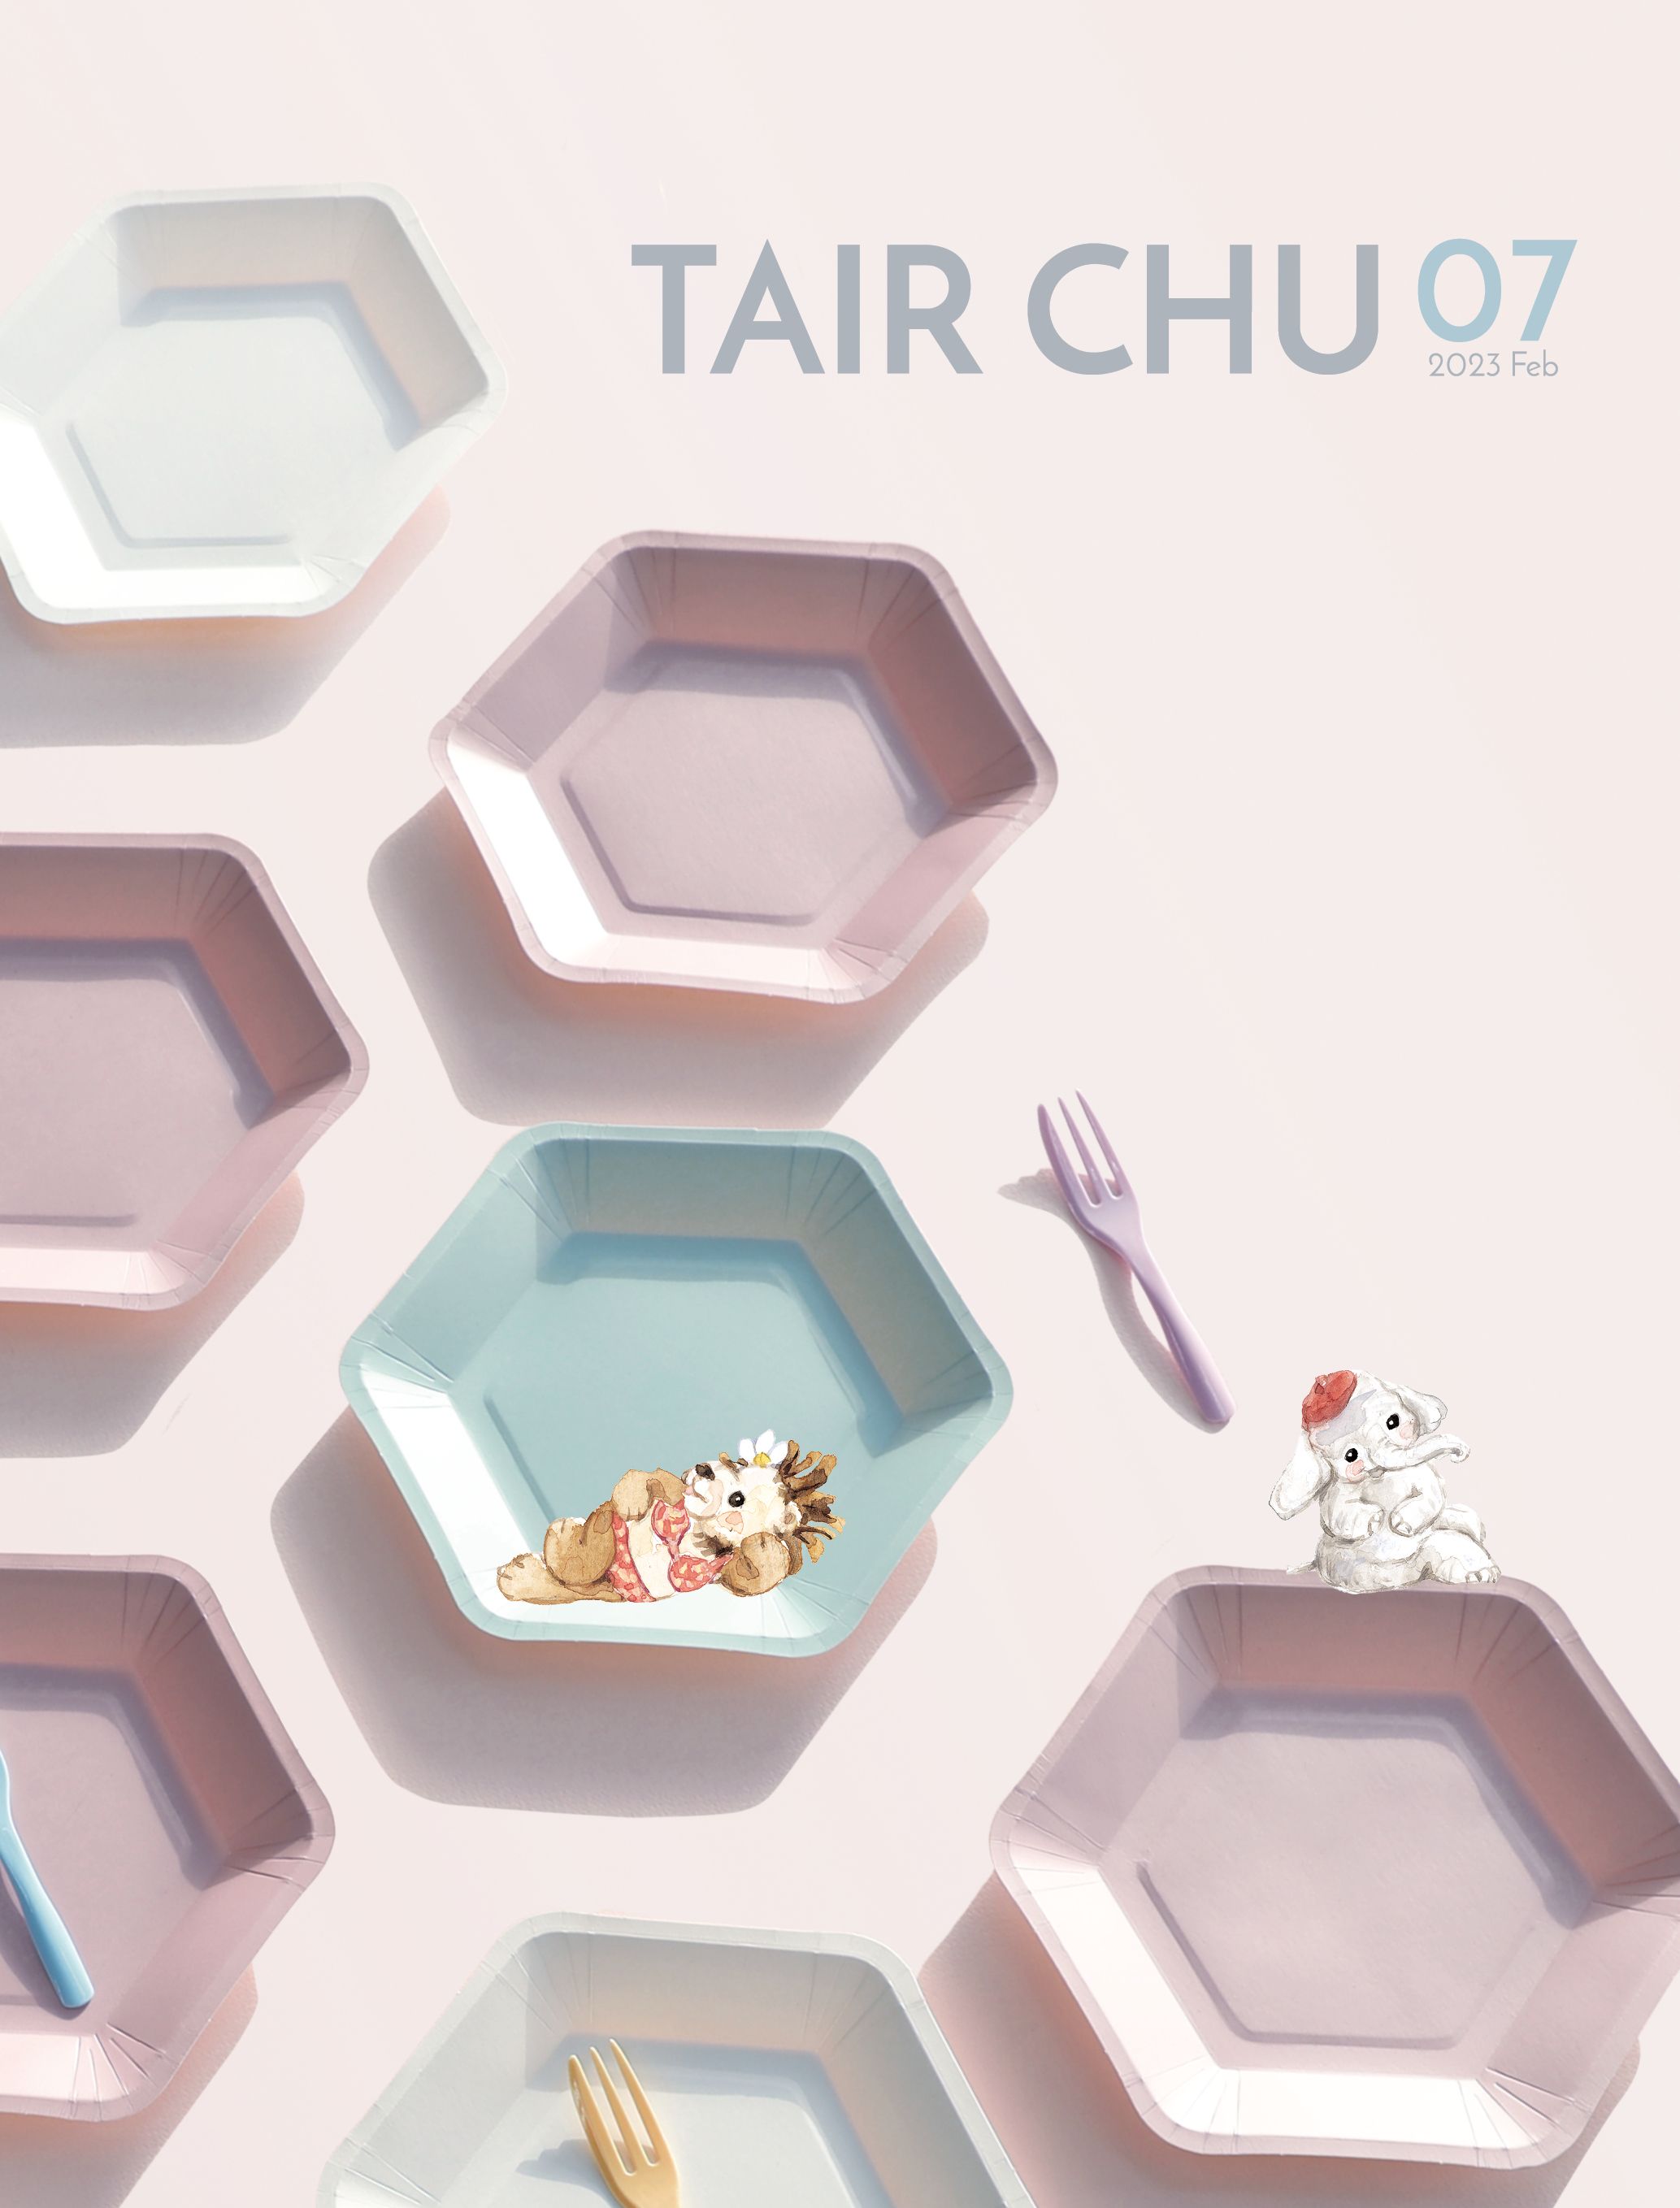 แคตตาล็อกเครื่องใช้ปาร์ตี้และเครื่องใช้โต๊ะ Tair Chu ชั้นปี 2023